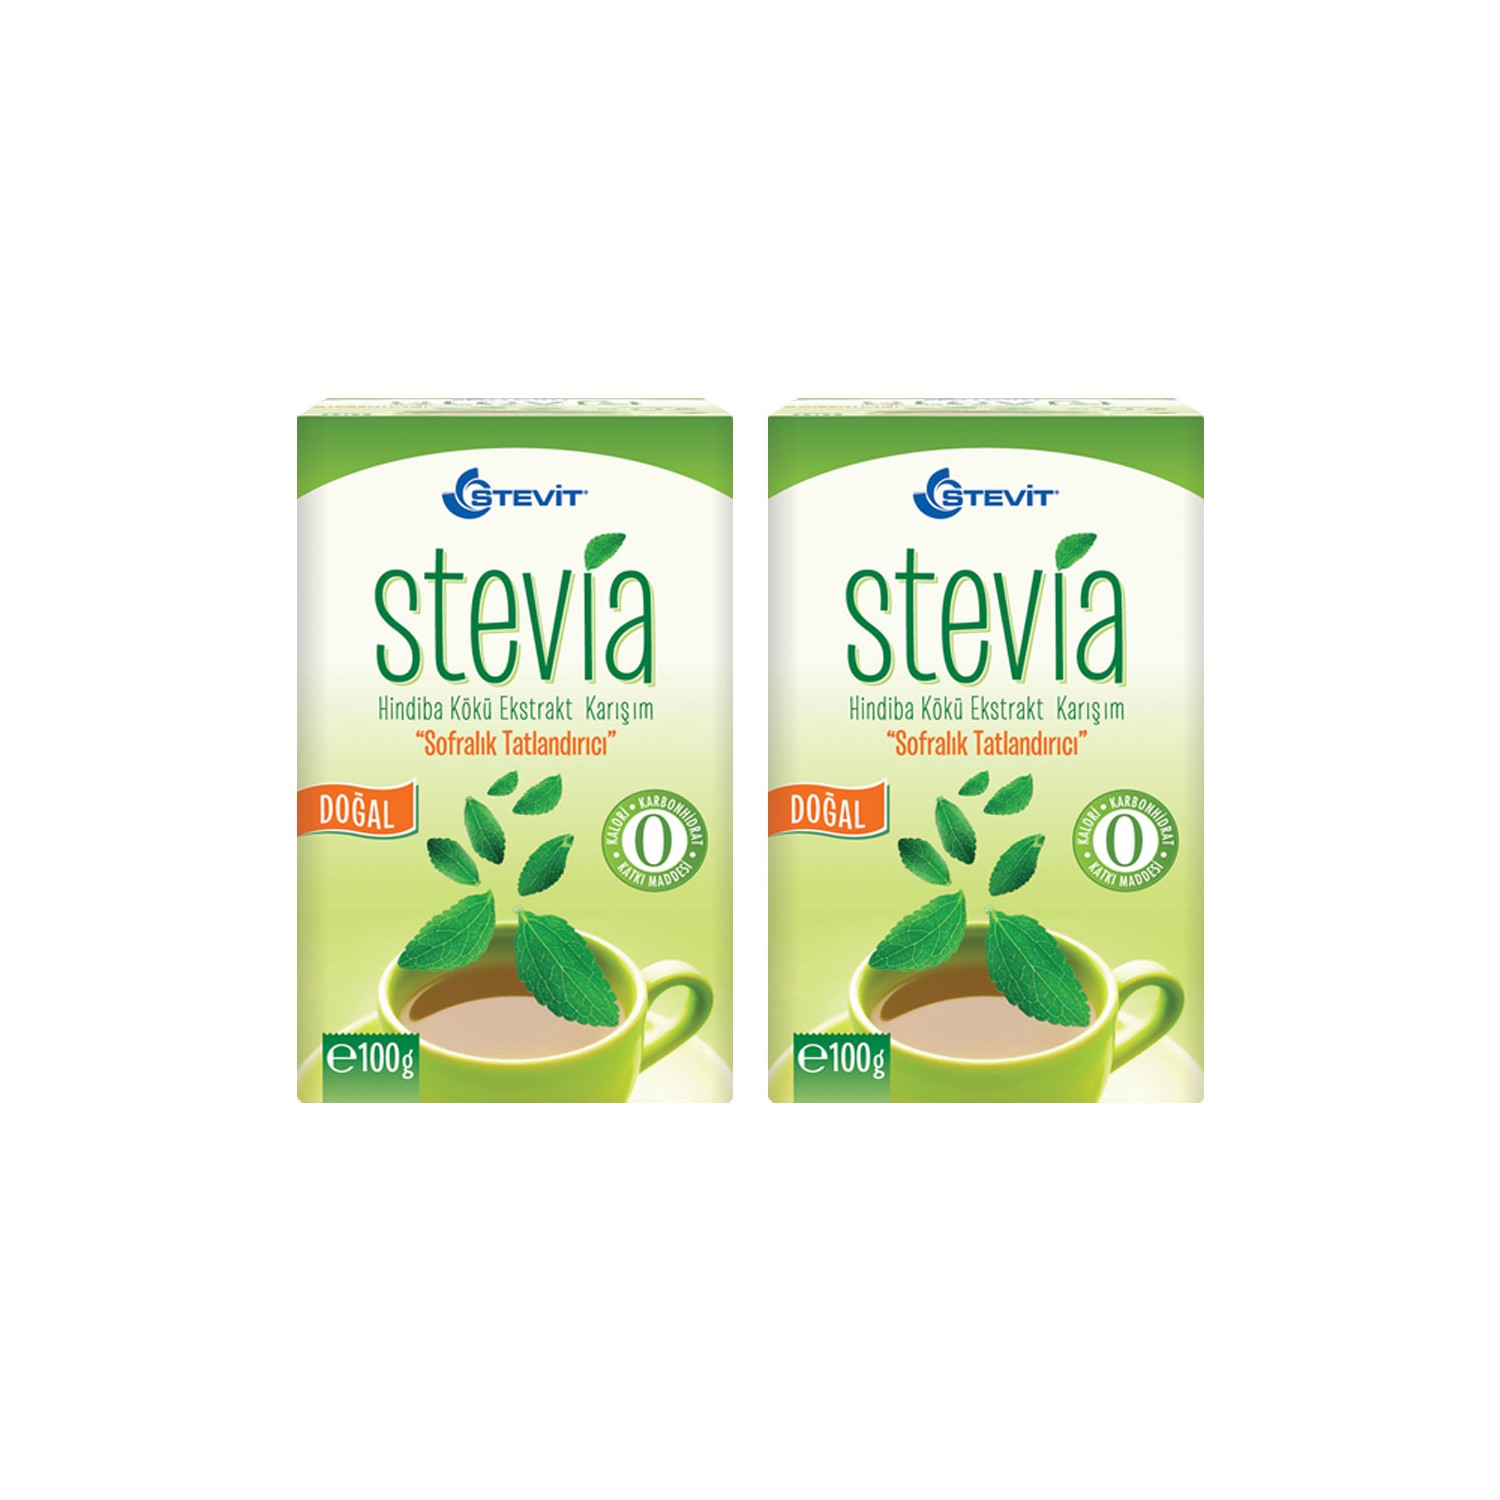 Экстракт корня стевии и цикория Balen Stevit, 2 упаковки по 100 г мате colon stevia 100 г